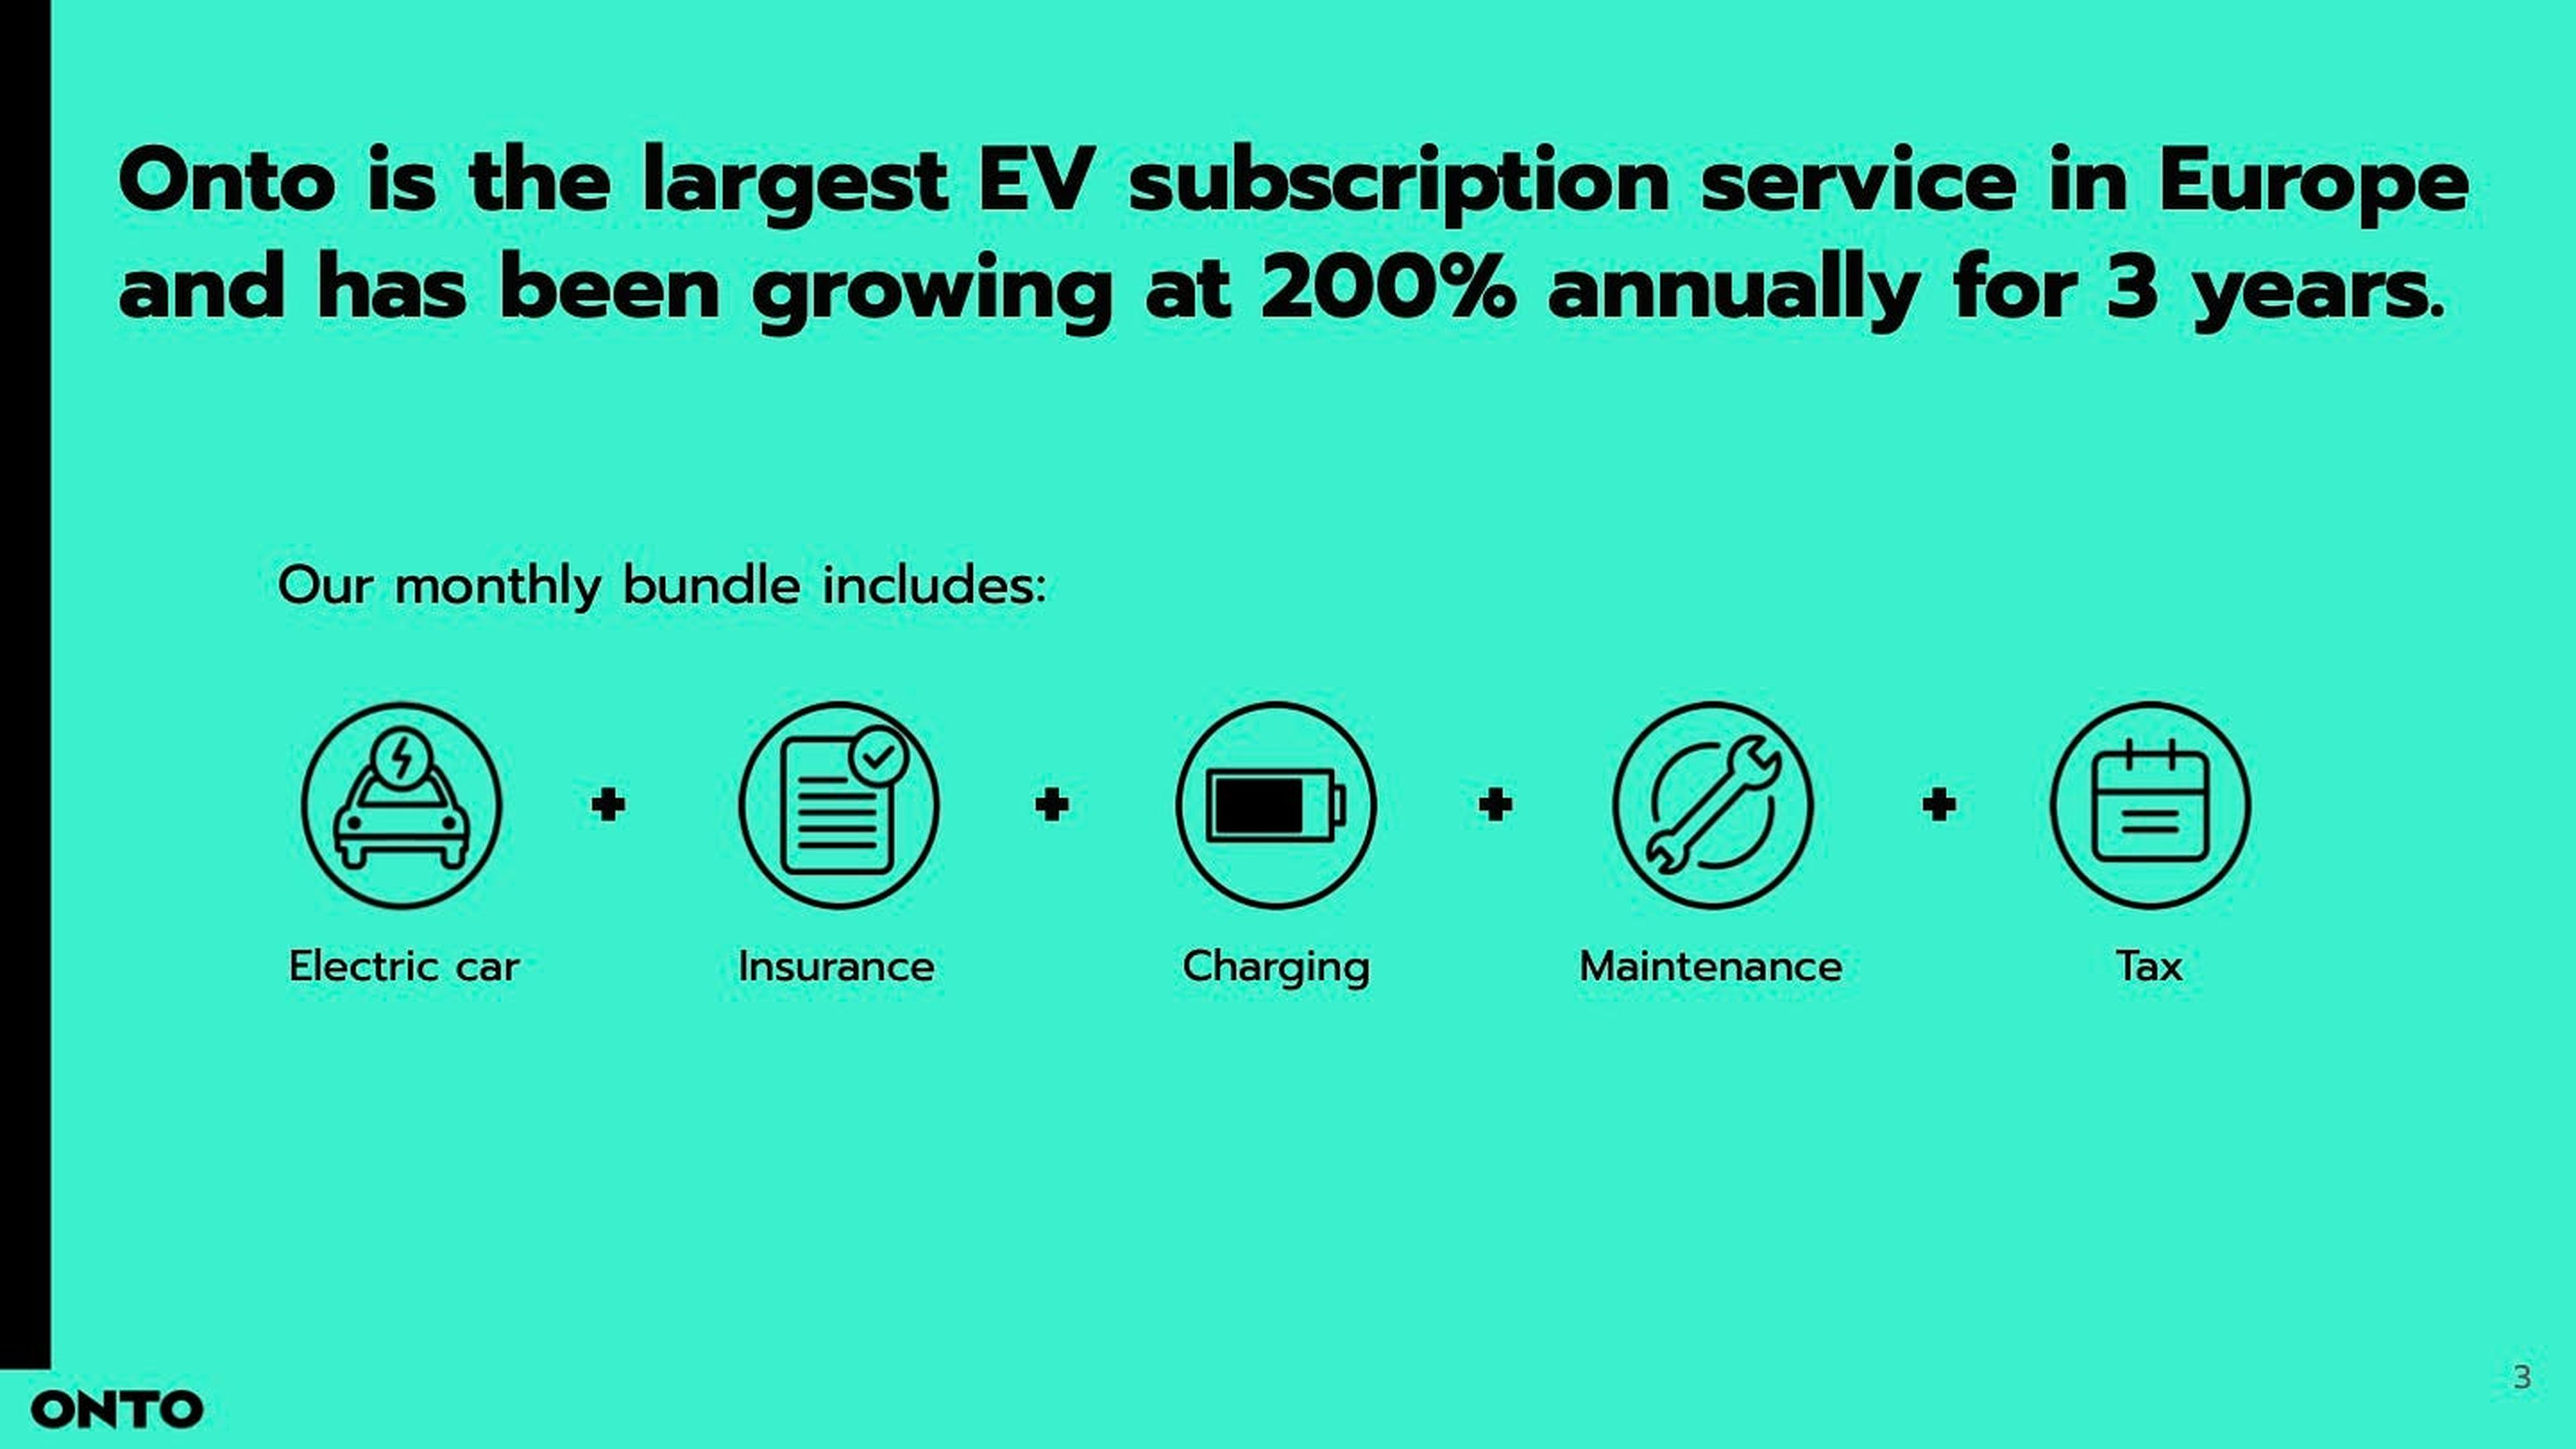 Durante 3 años la compañía ha crecido un 200% anual hasta convertirse en uno de los servicios de suscripción de vehículos eléctricos más grandes de Europa.